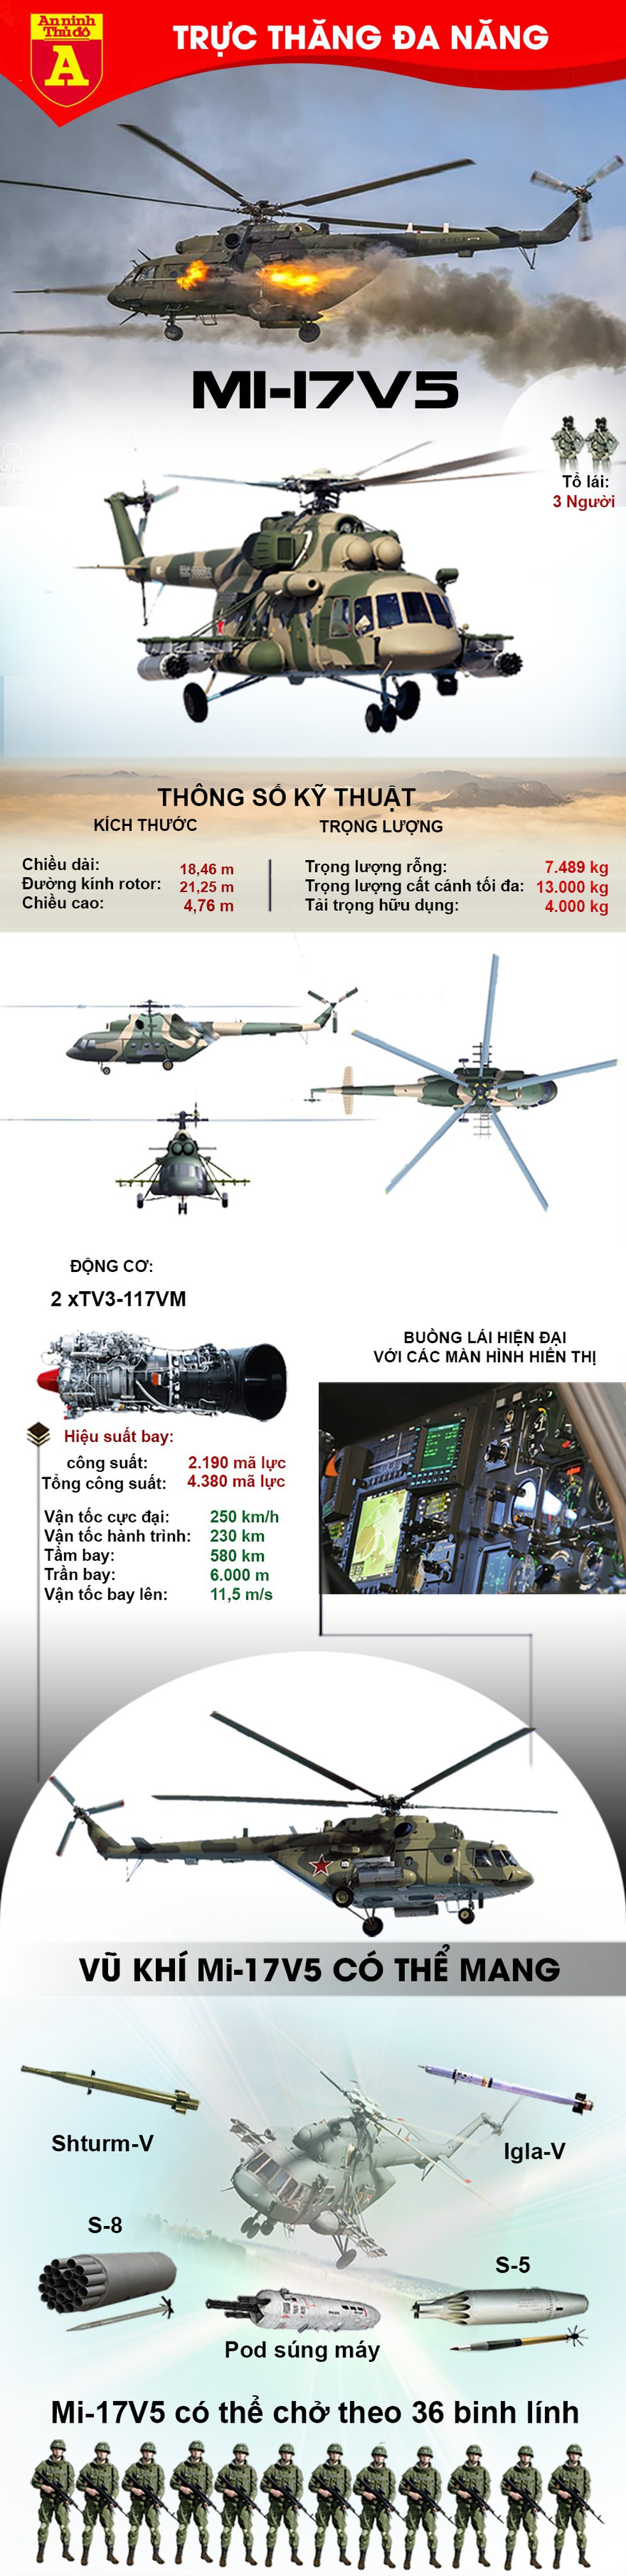 [Infographics] Tại sao Mỹ phải bấm bụng mua Mi-17 Nga để trang bị cho Afghanistan? - Ảnh 1